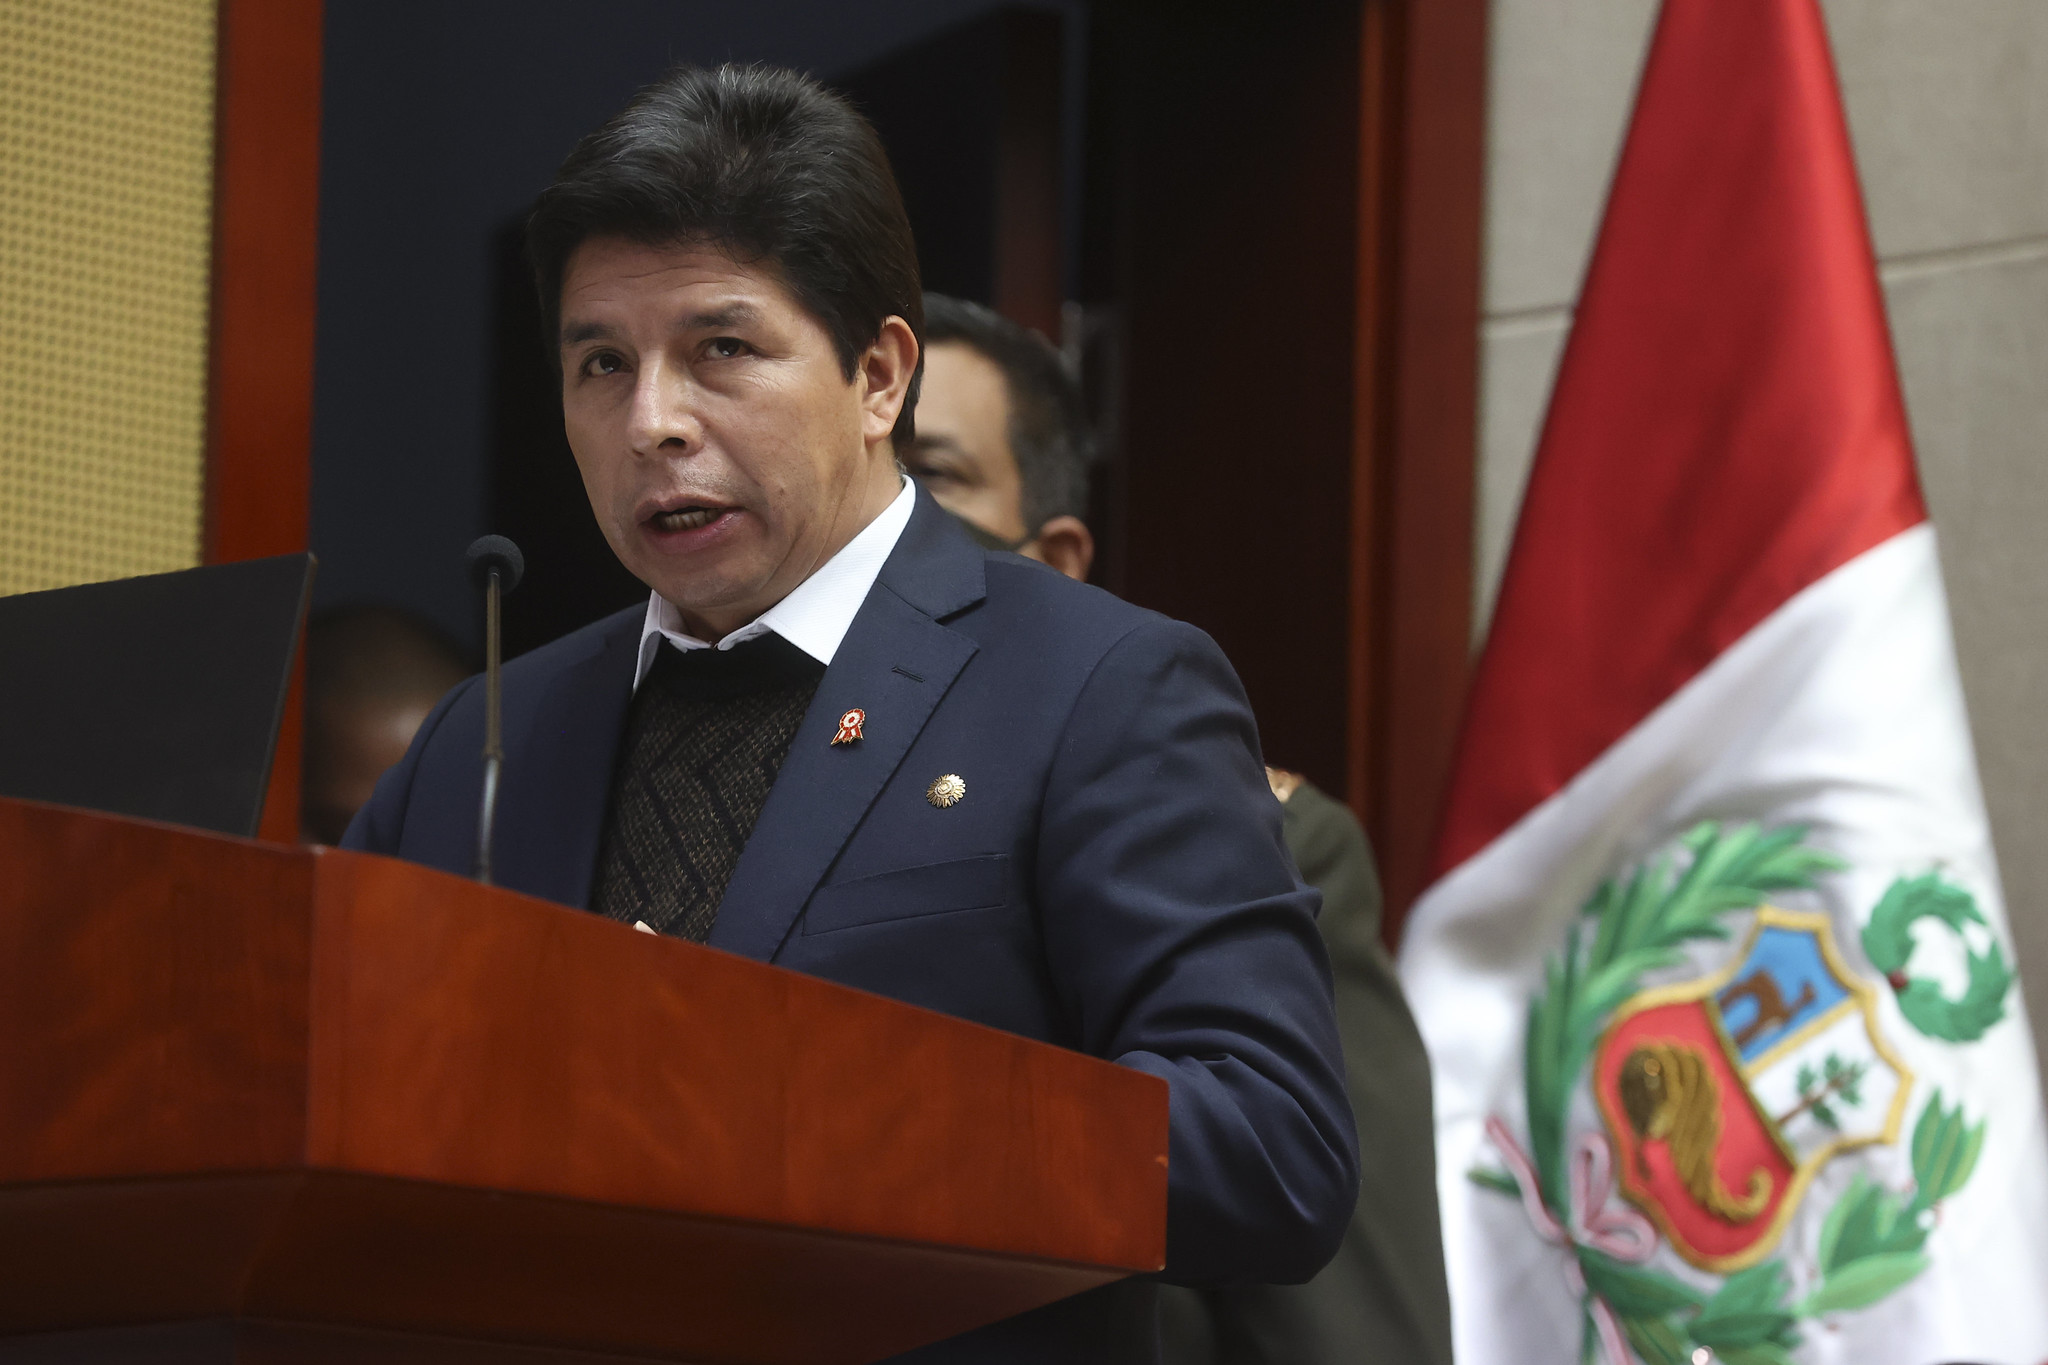 El Presidente de Perú afronta un tercer intento de destitución